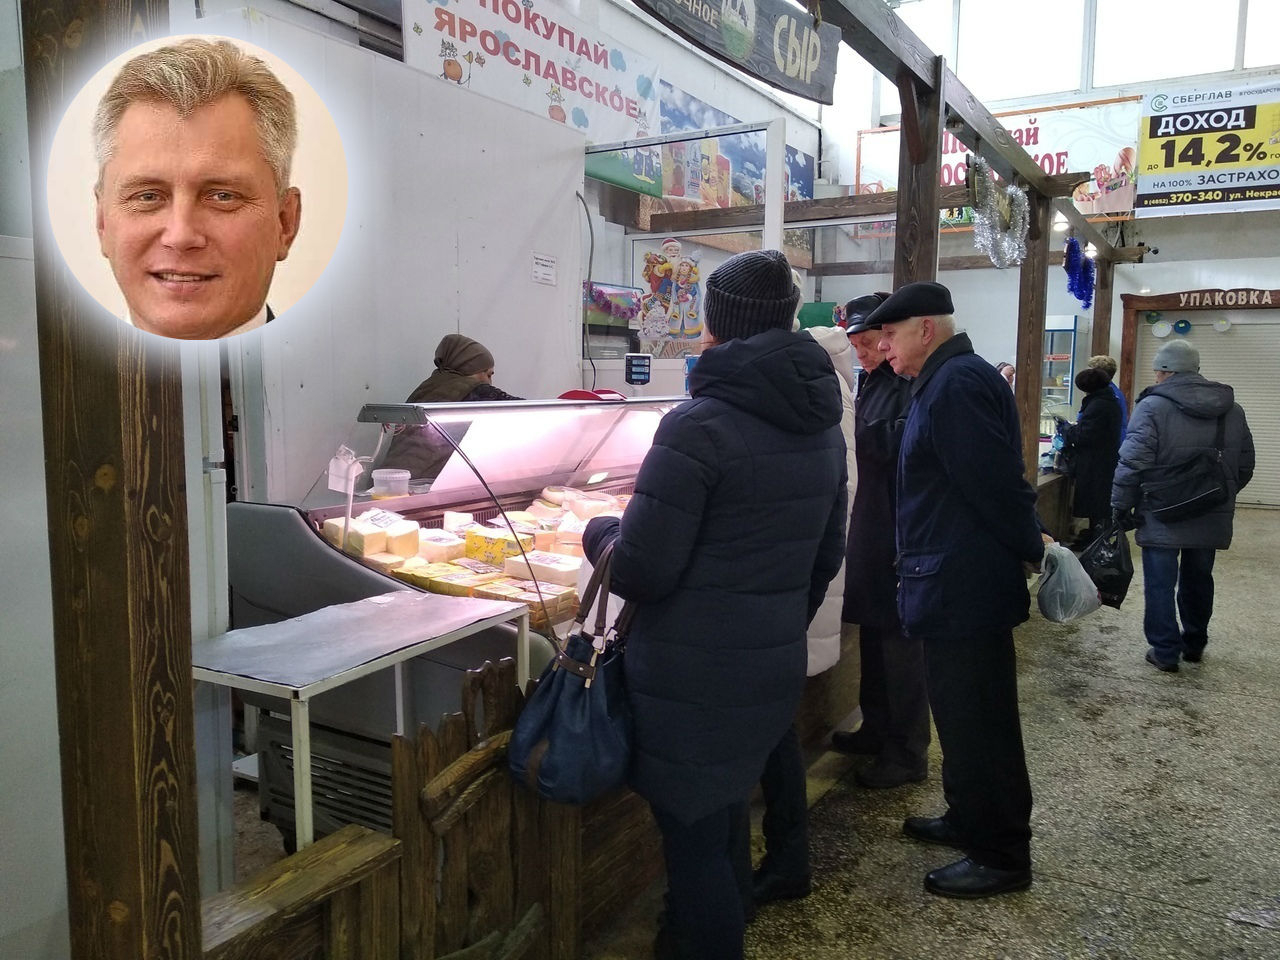 «Сотни лишатся работы»: о панике жильцов и закрытии рынка власти Ярославля